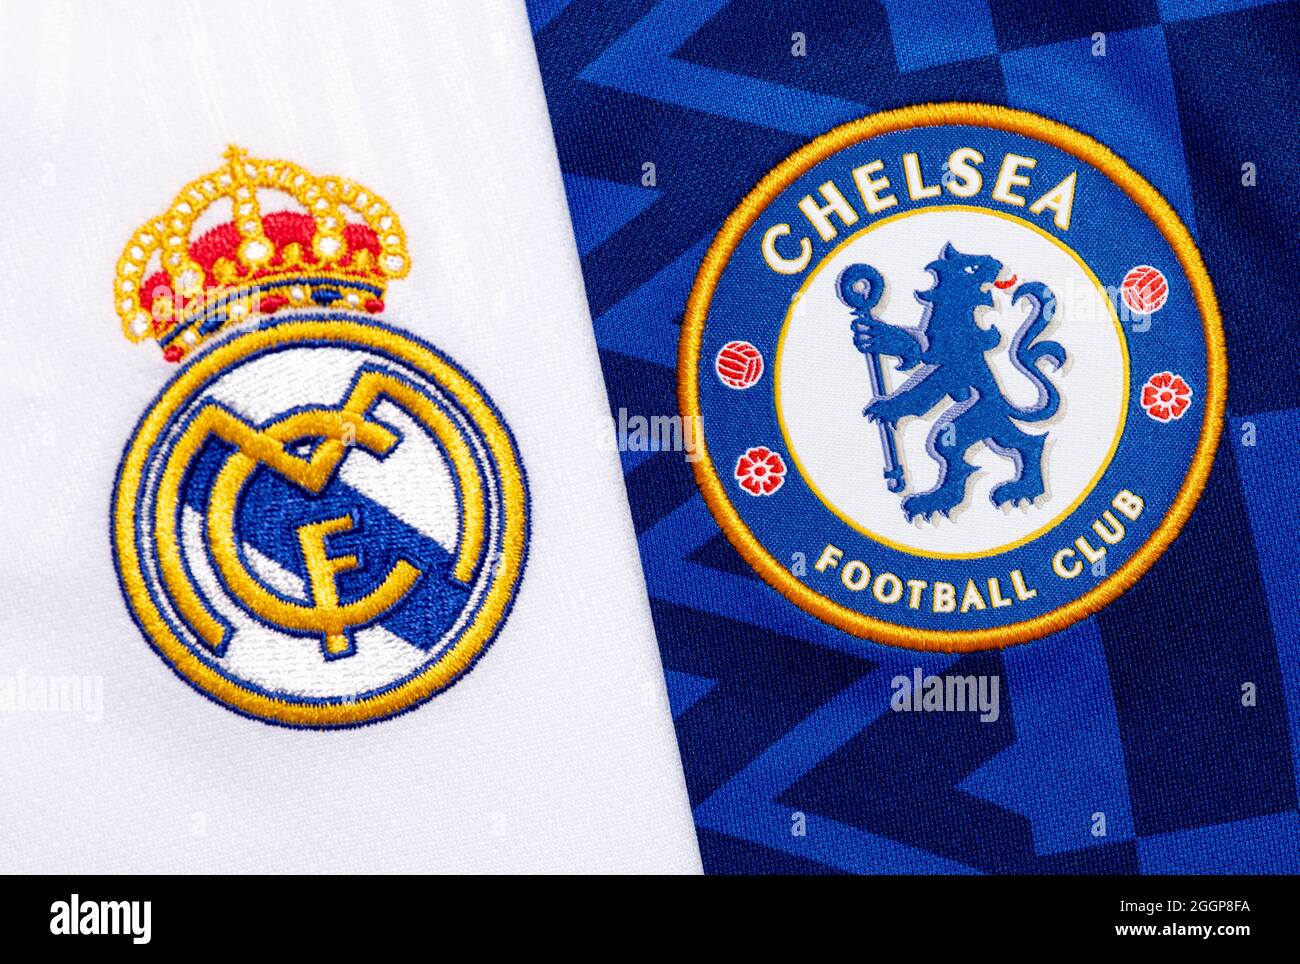 Nahaufnahme des Vereinswappens von Real Madrid & Chelsea FC. Stockfoto